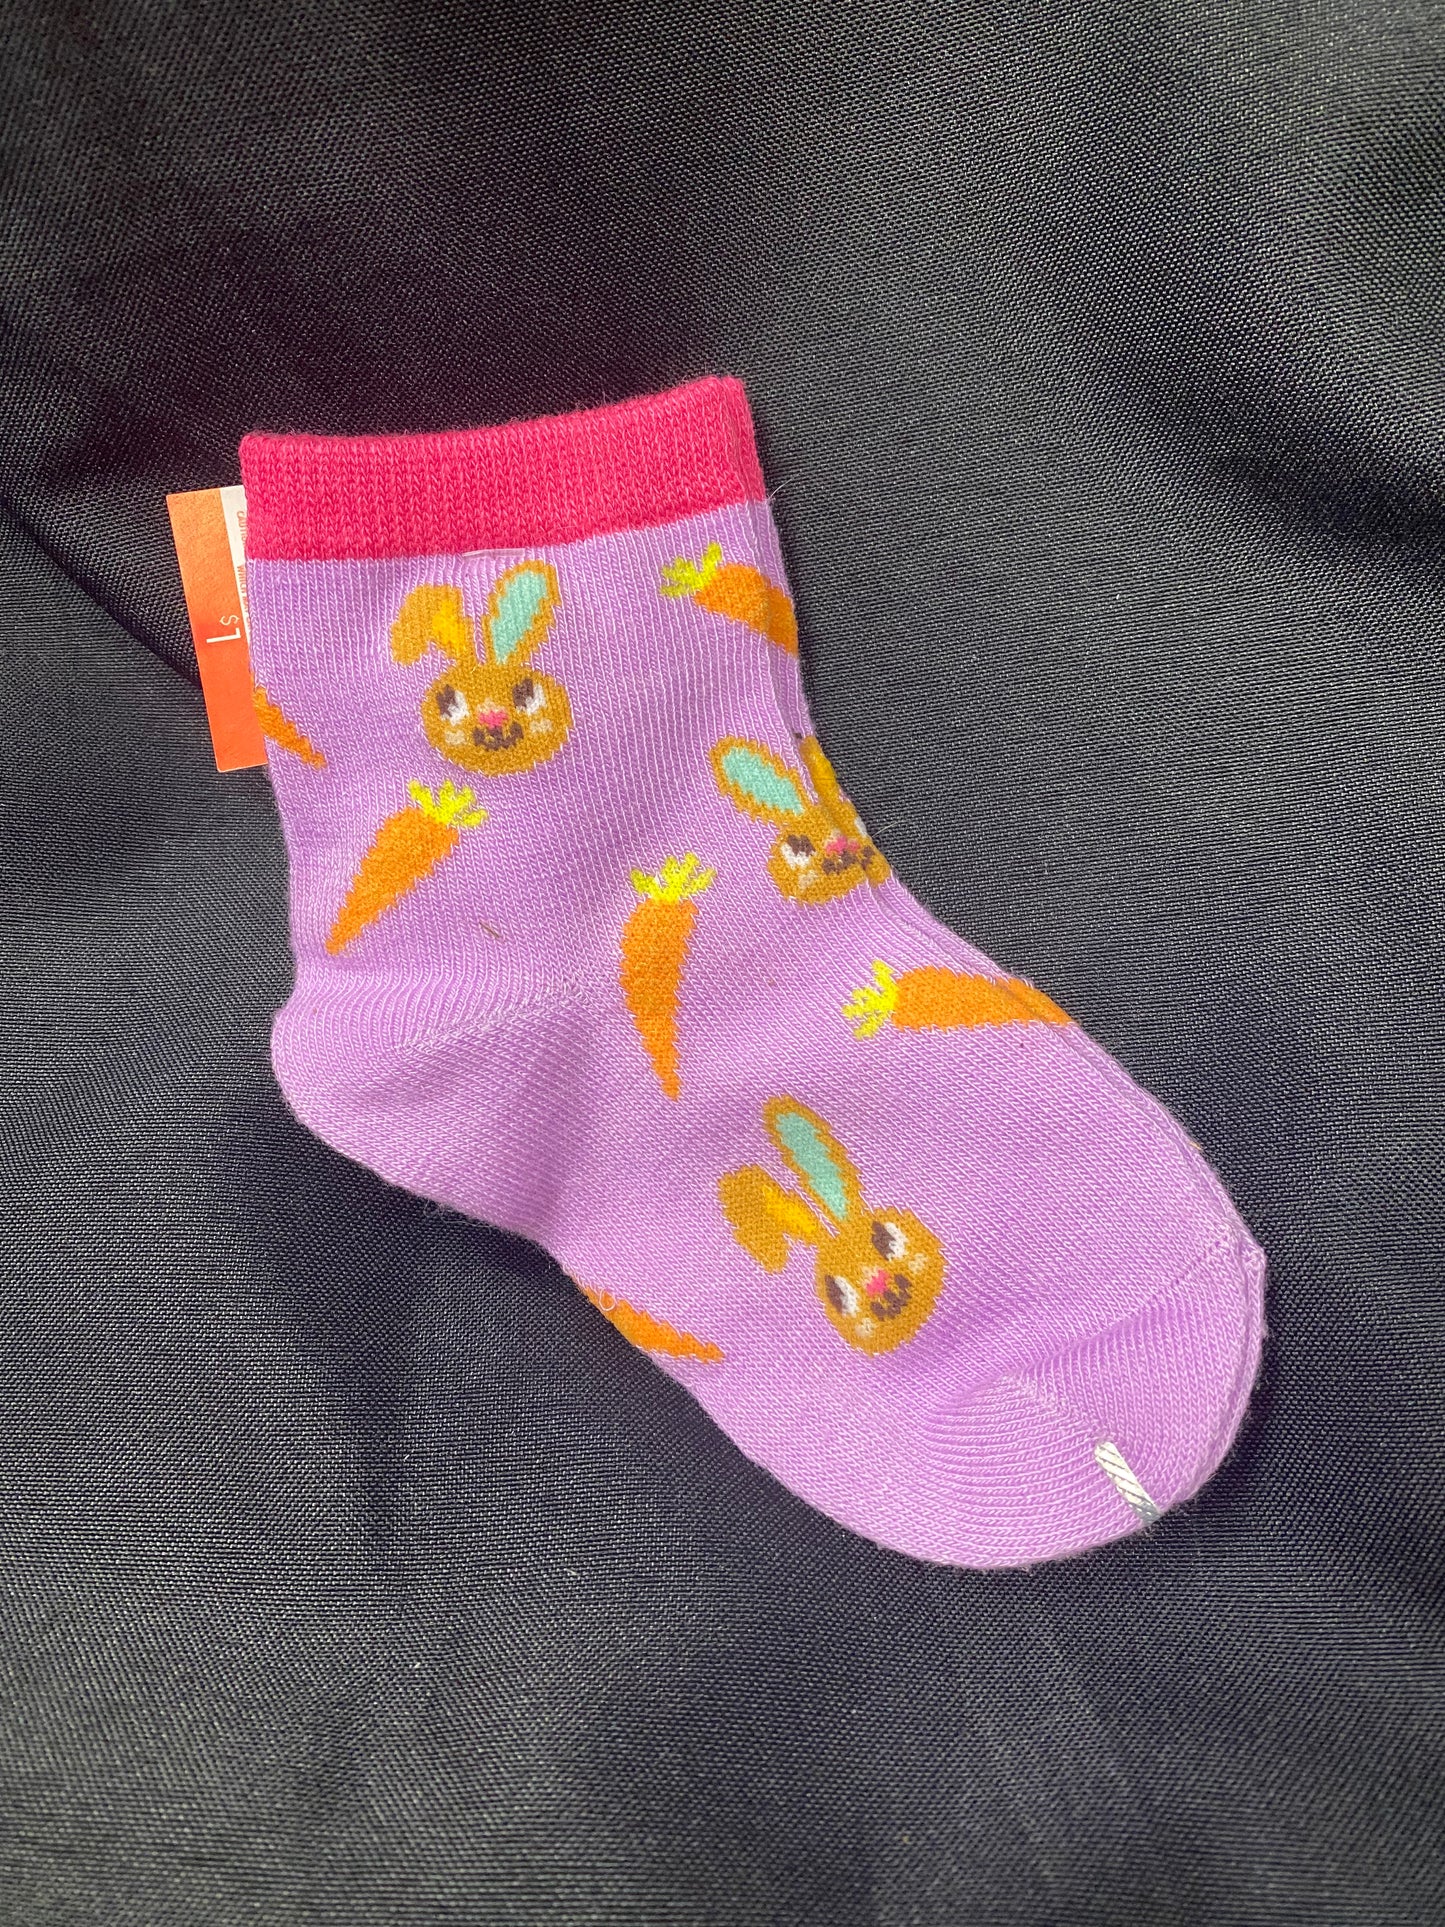 Kids Bunny Socks